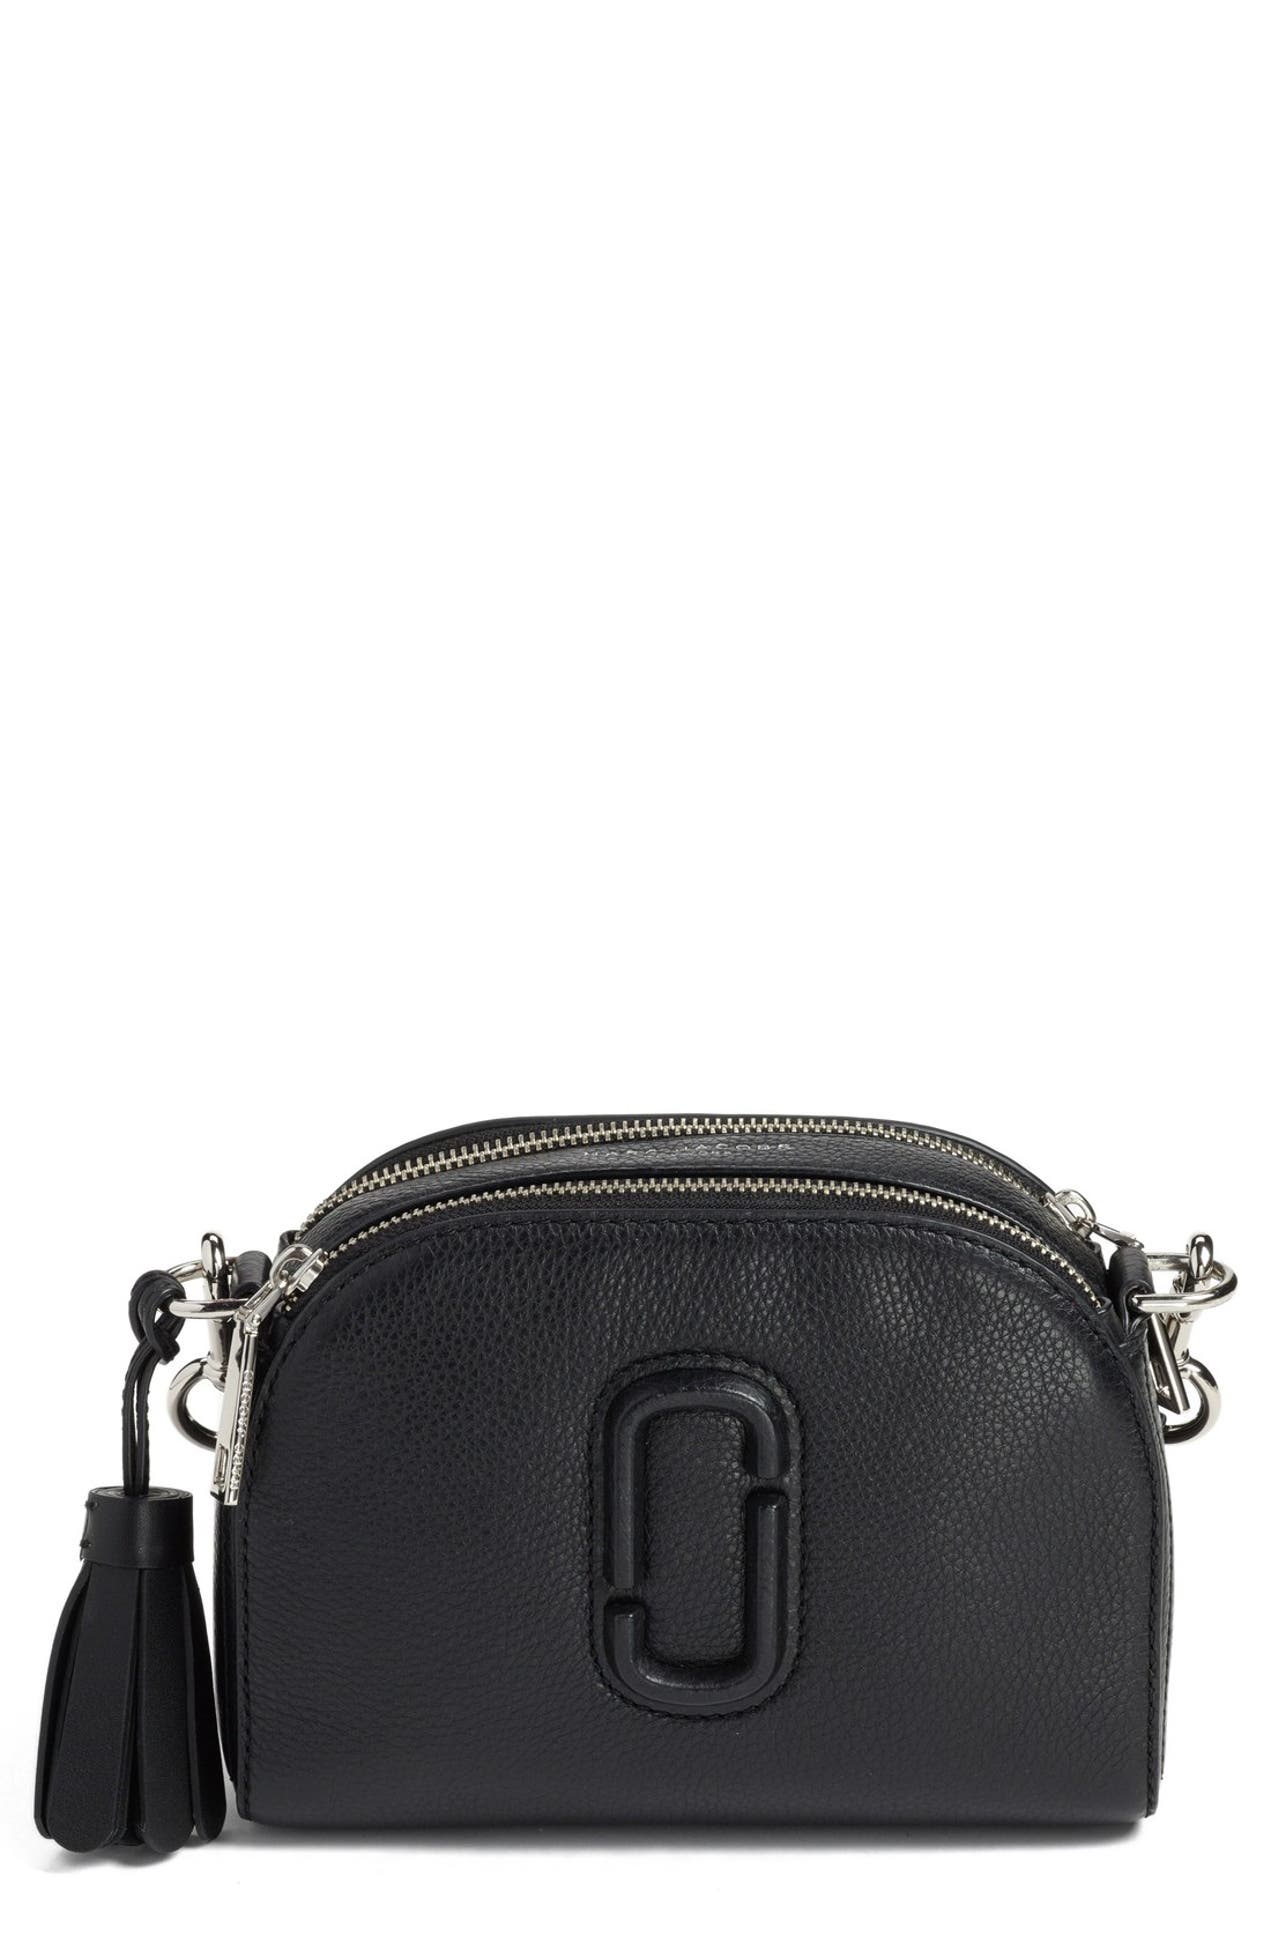 Marc Jacobs | Shutter Leather Crossbody Bag | Nordstrom Rack